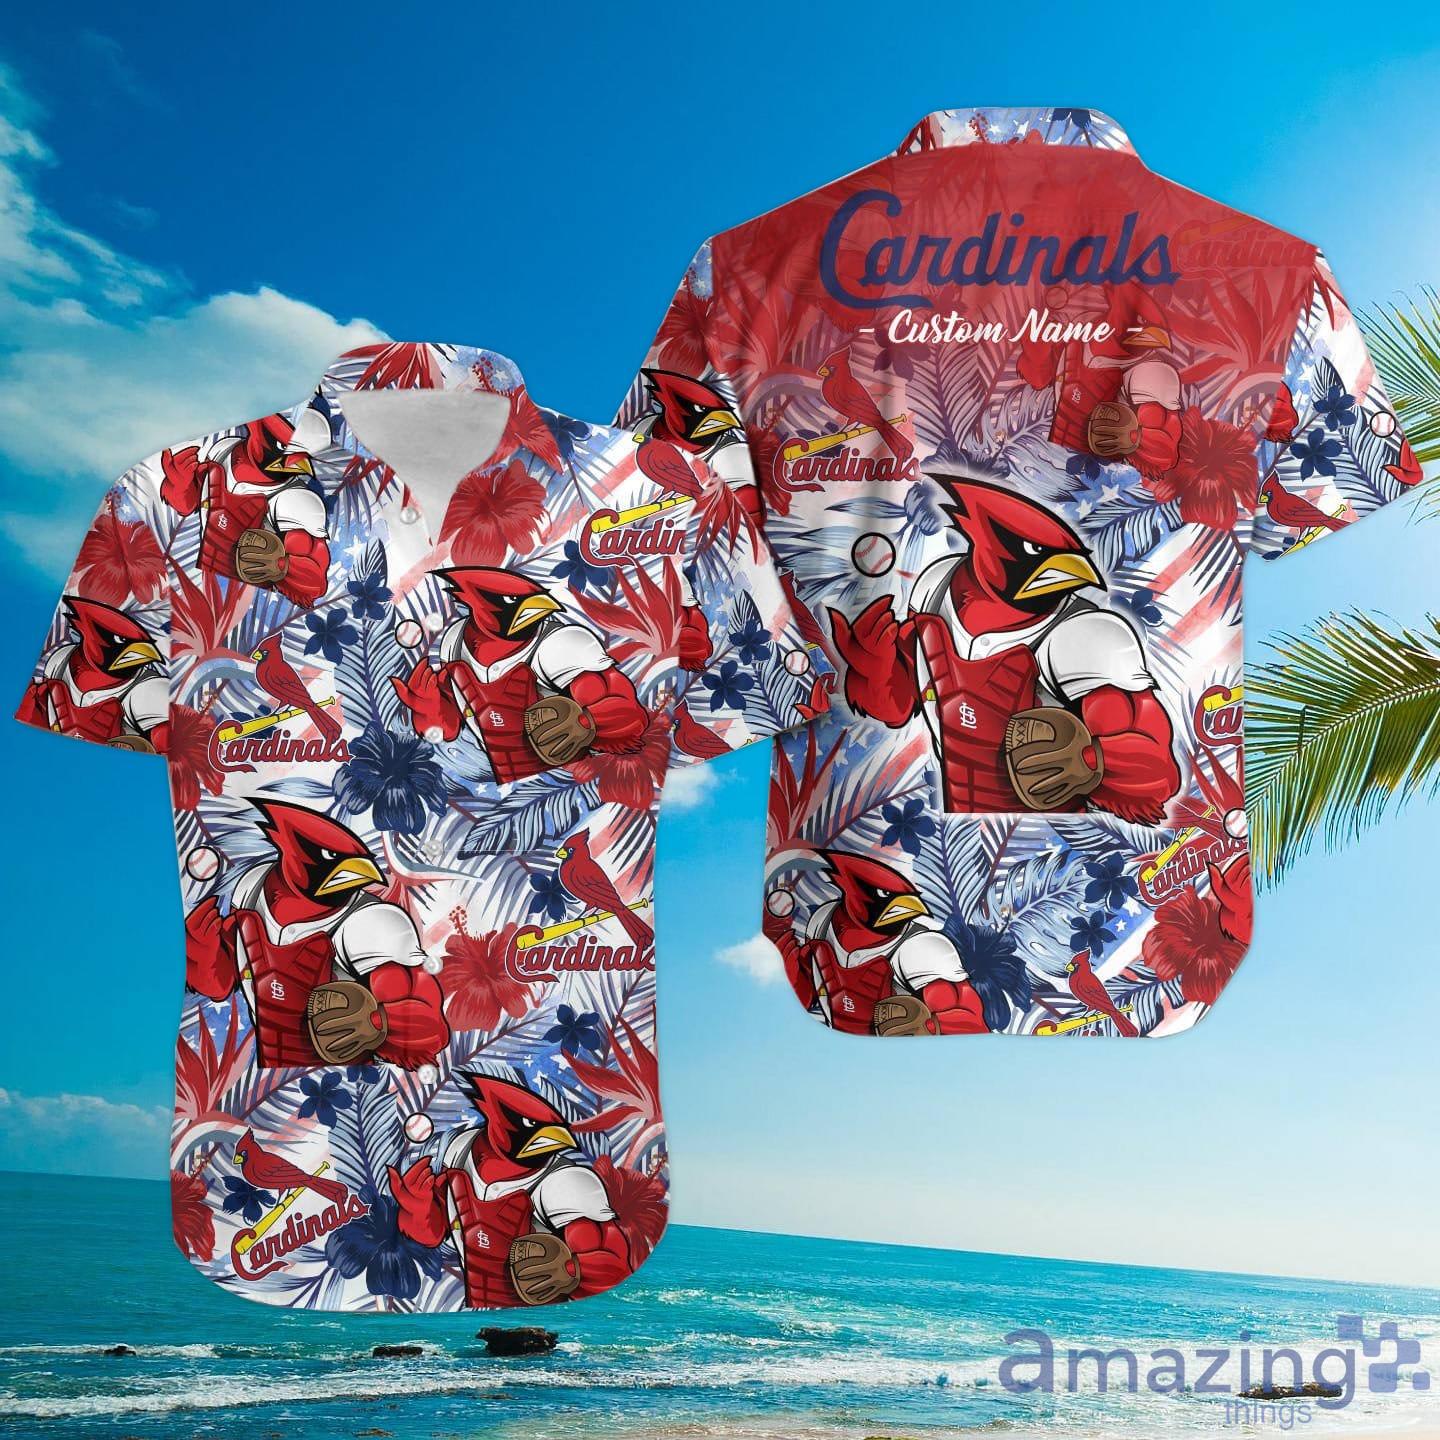 St. Louis Cardinals MLB Hawaiian Shirt Pool Partiestime Aloha